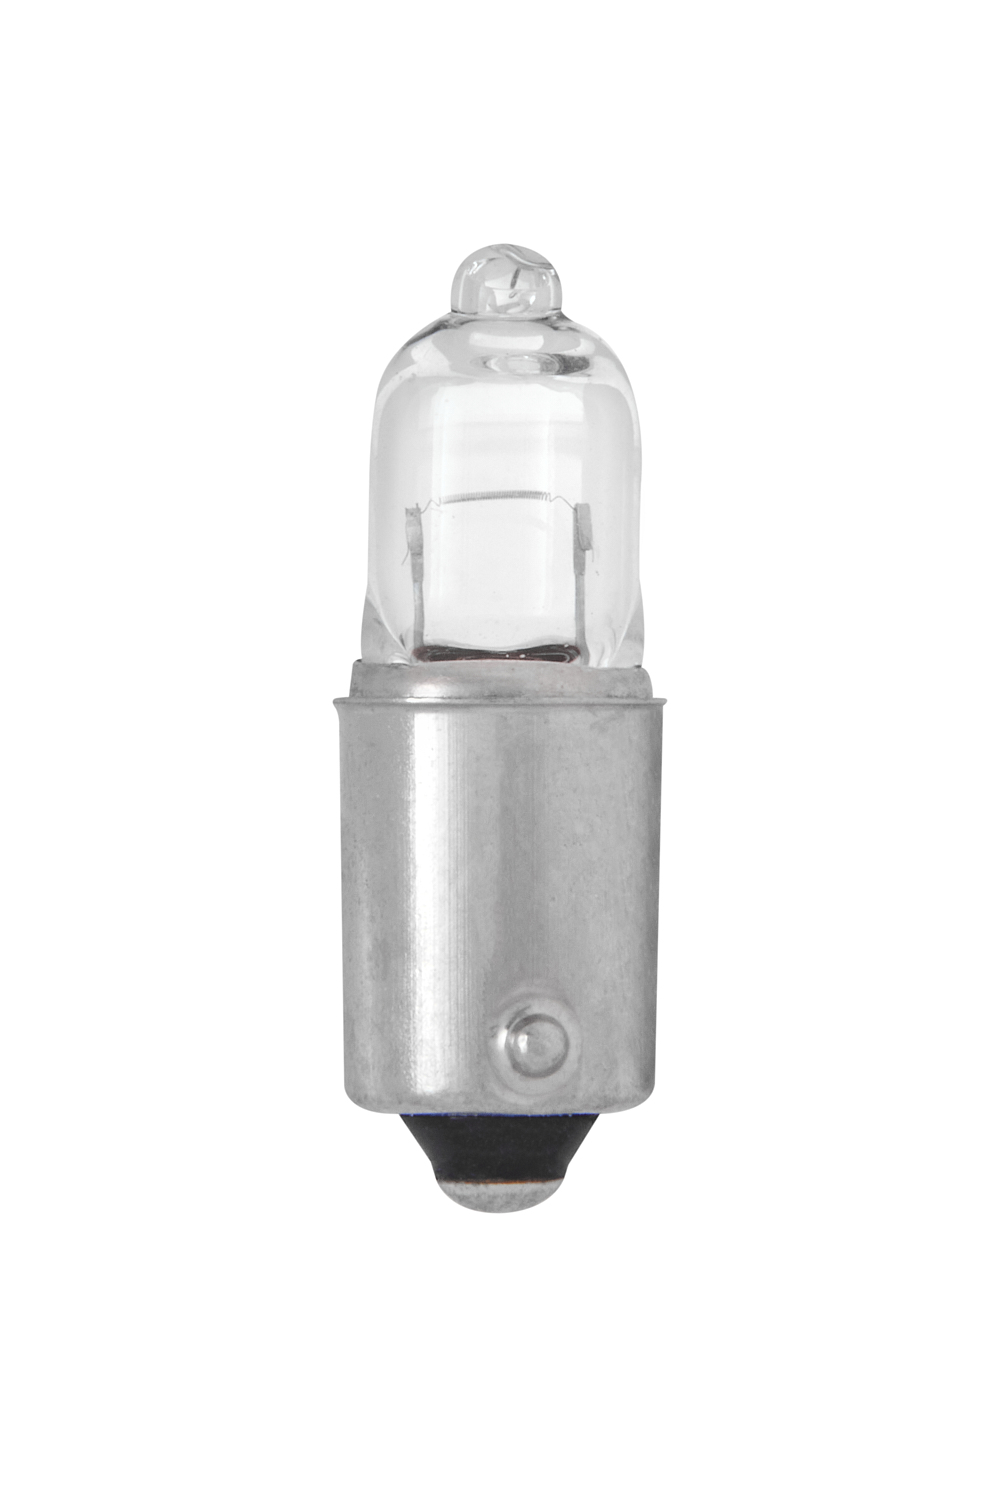 DOWILIN Bax9S H6W 10 Led Parking Light Tail Light Bulb 12V-2PCS 